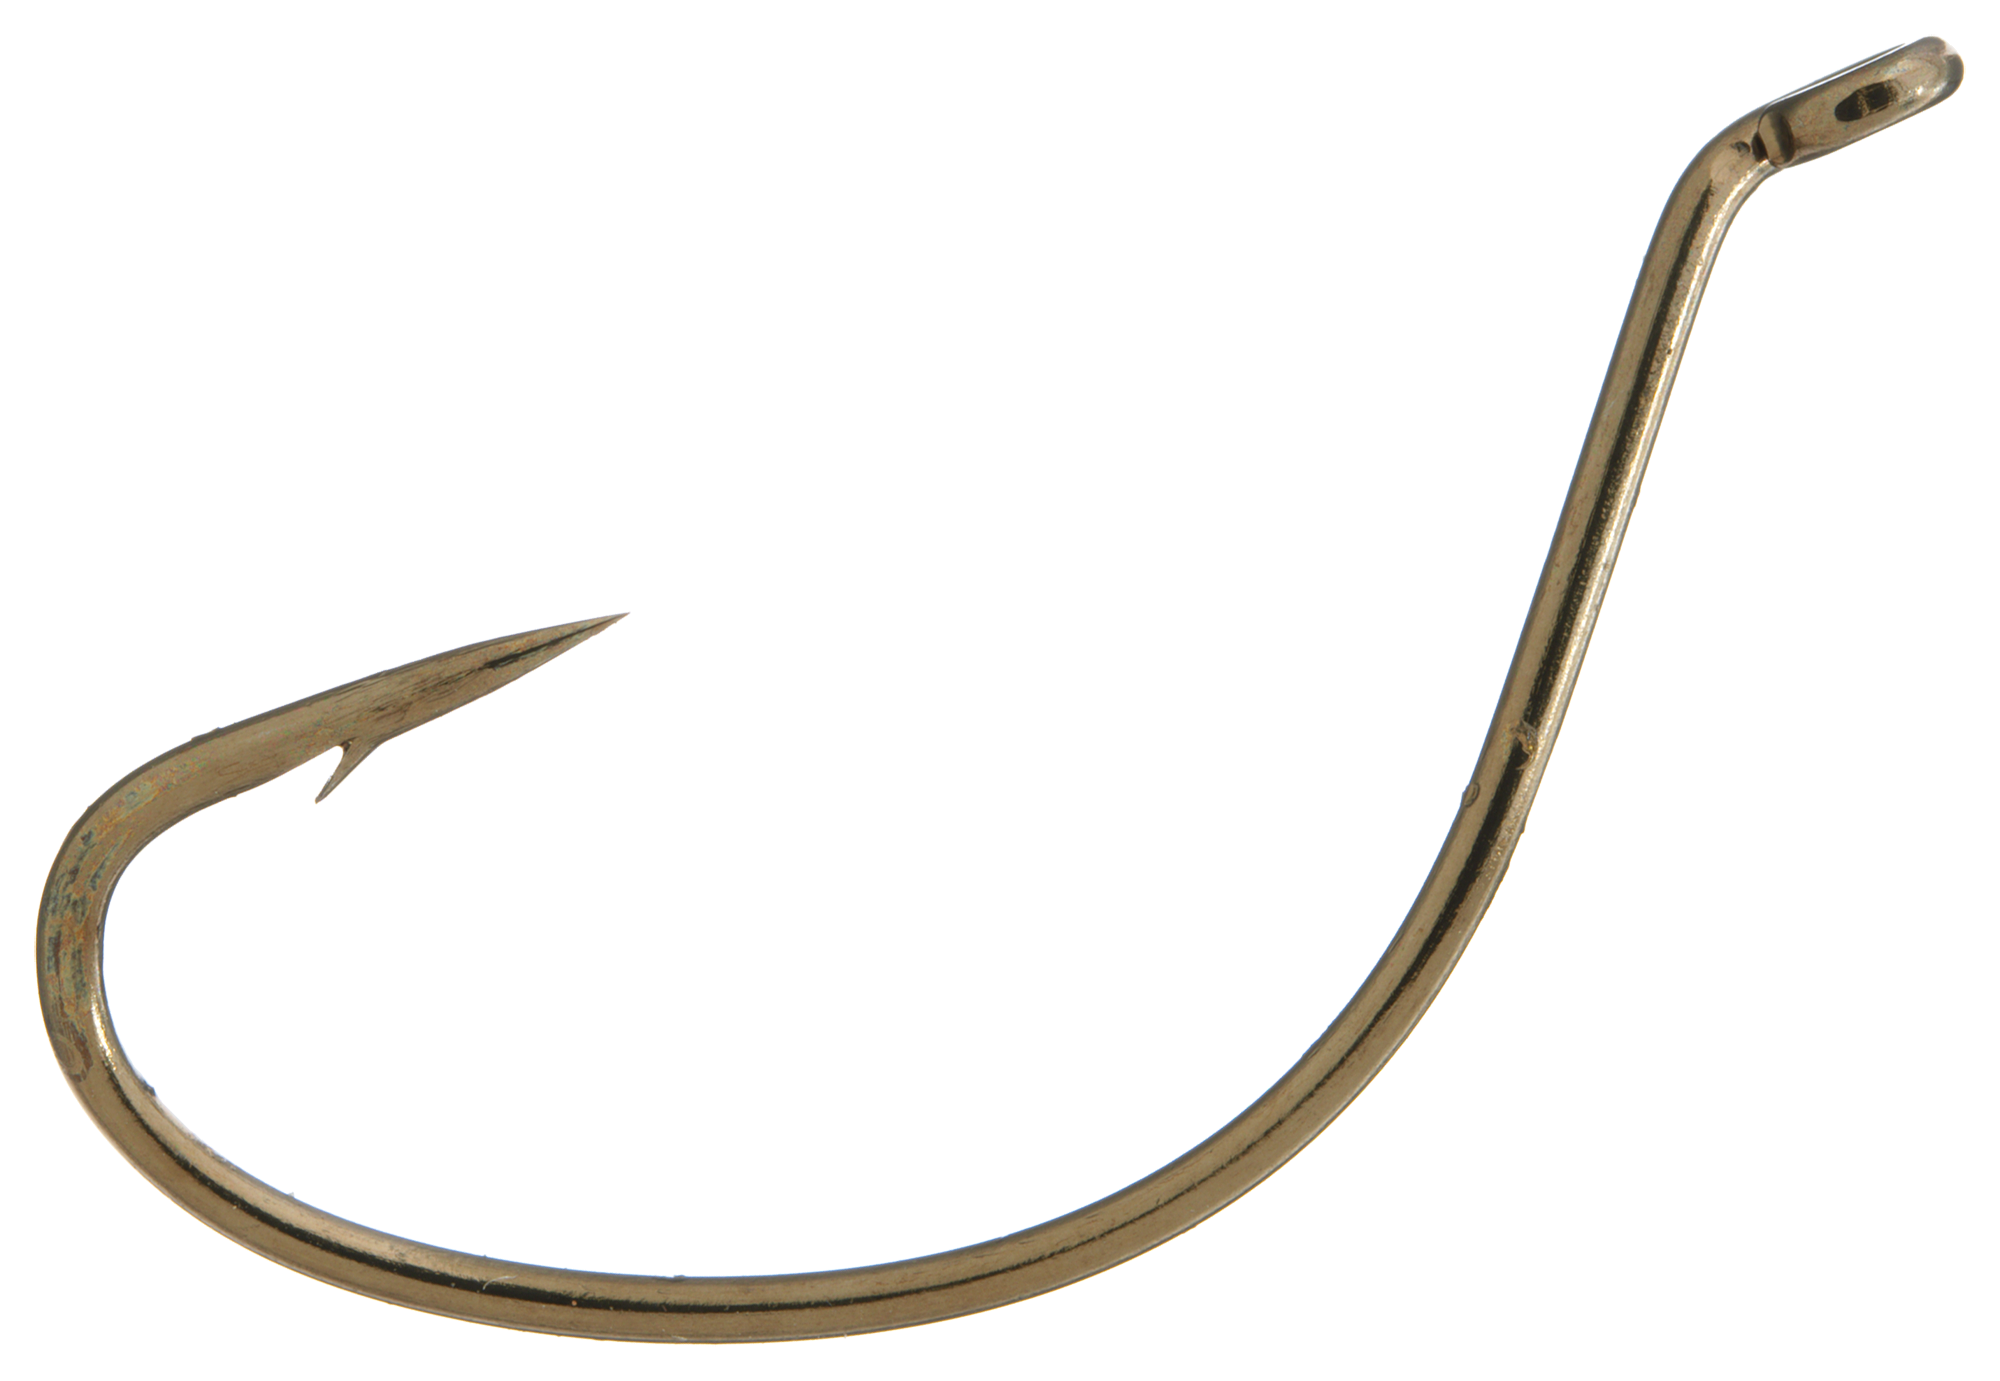 Lazer Sharp Kahle Up Eye Offset Fishing Hook, Bronze, 1/0